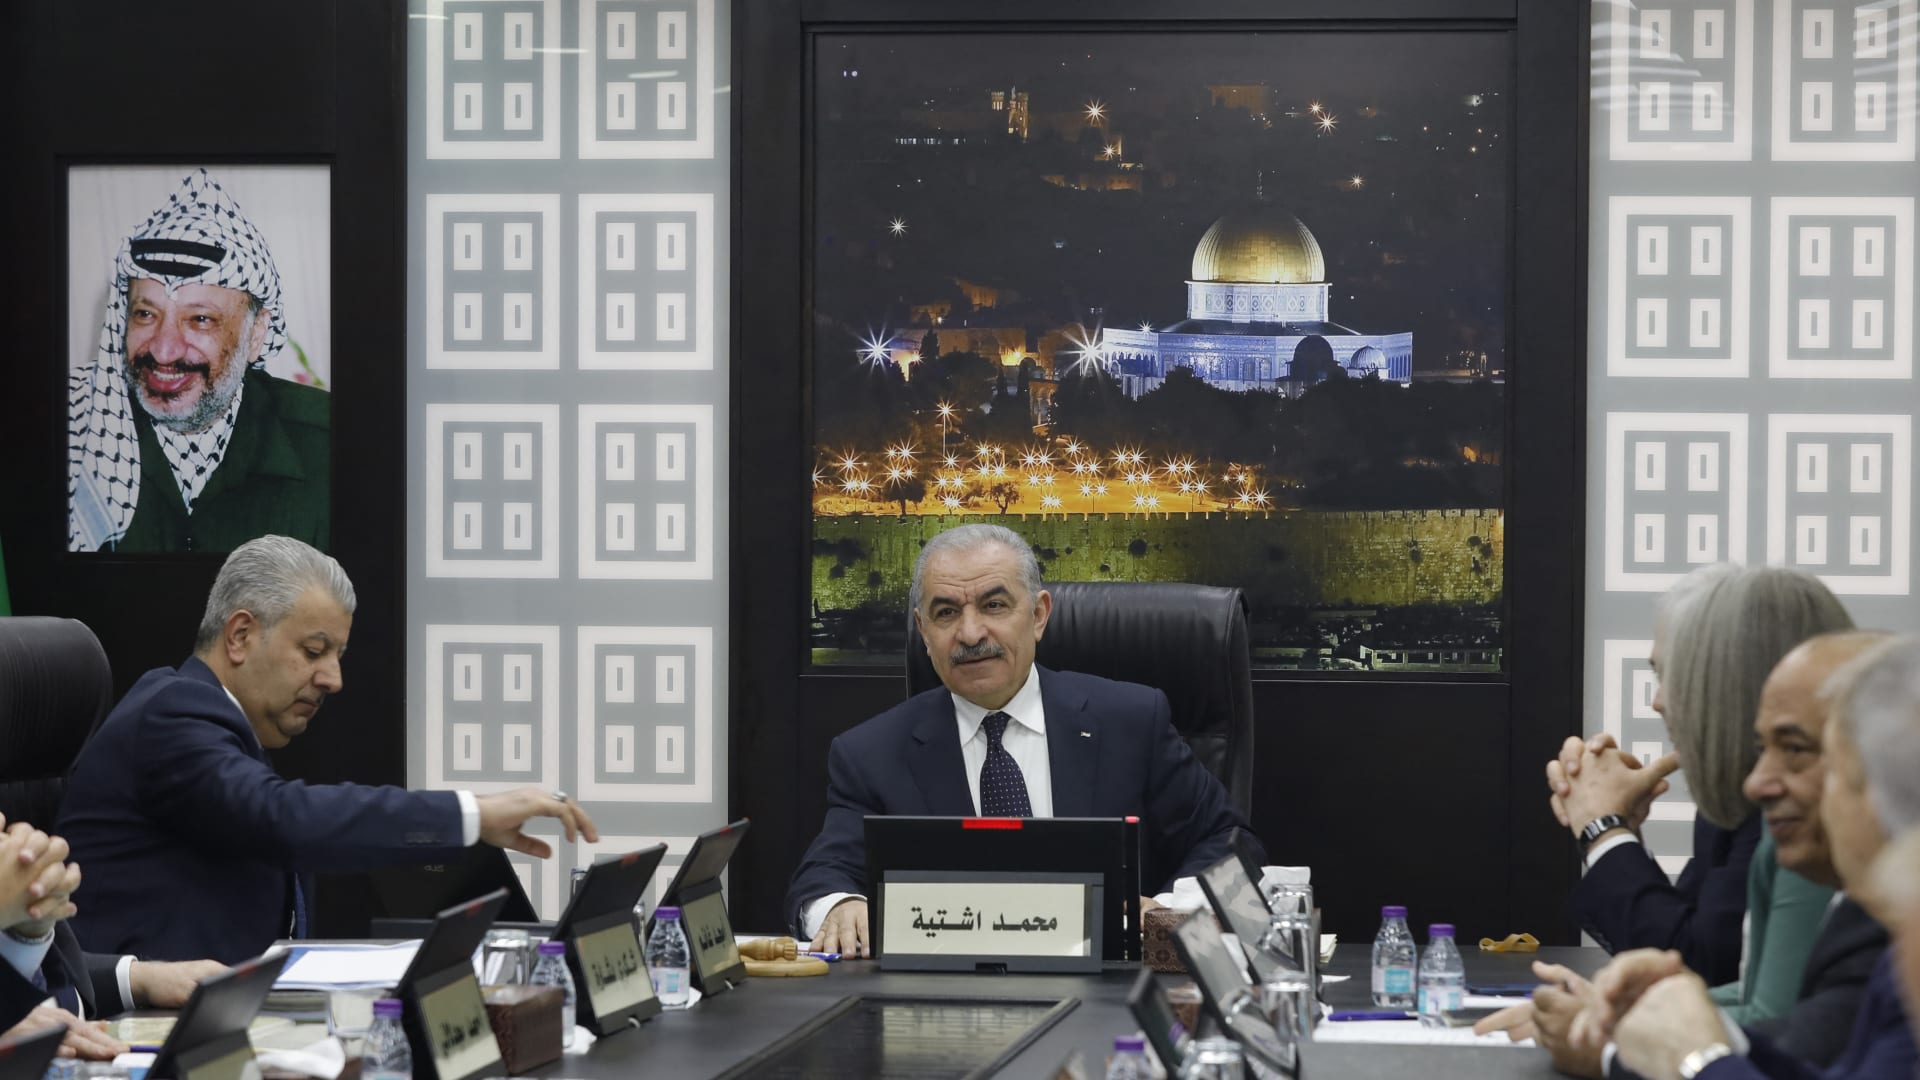 ما سبب استقالة رئيس وزراء السلطة الفلسطينية وحكومته الآن؟ شاهد ما قاله إليوت غوتكين